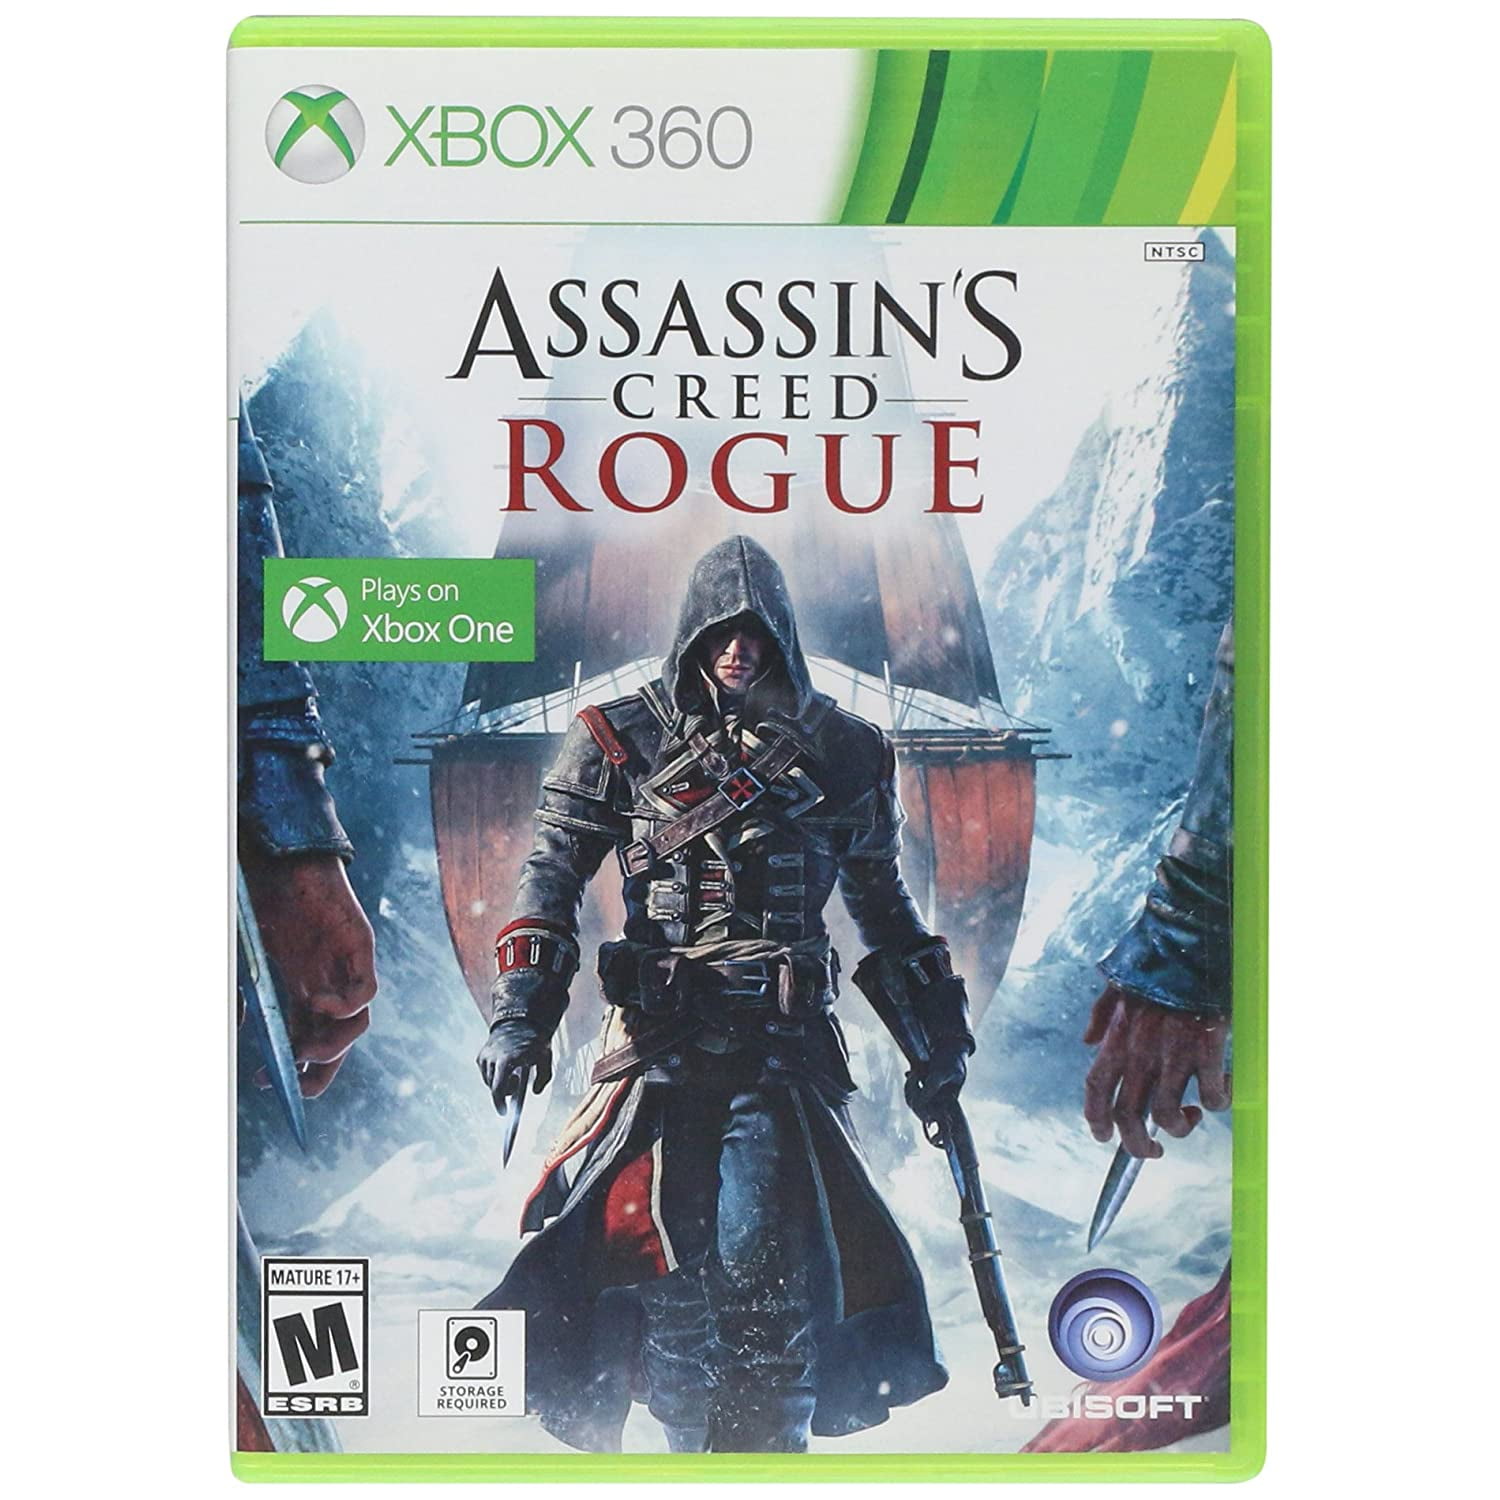 Assassins Creed Rogue - Xbox 360